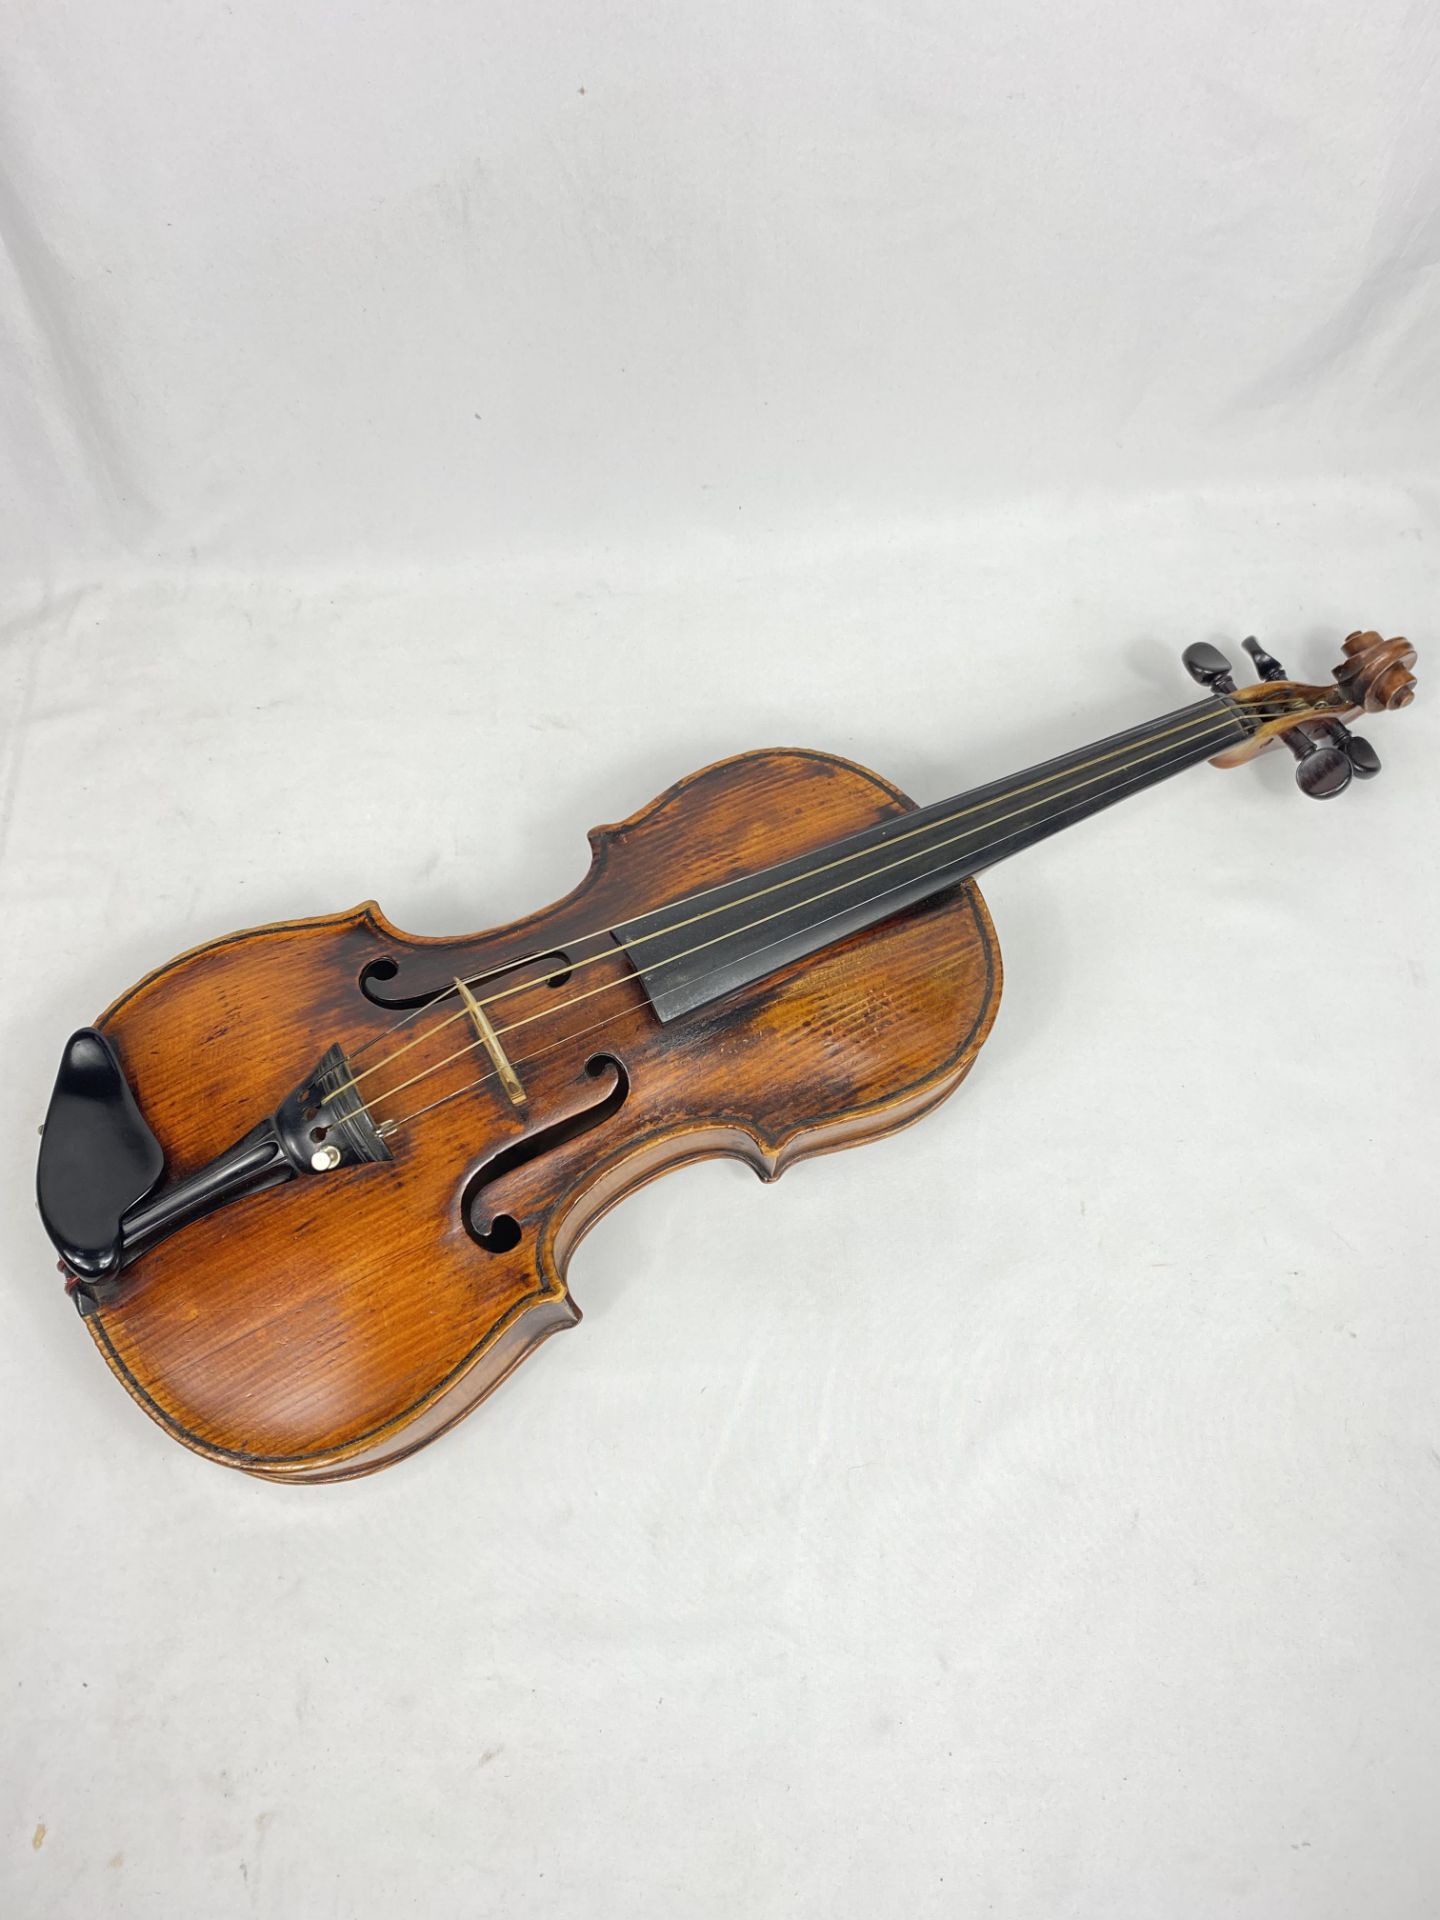 14.5" violin in hard case